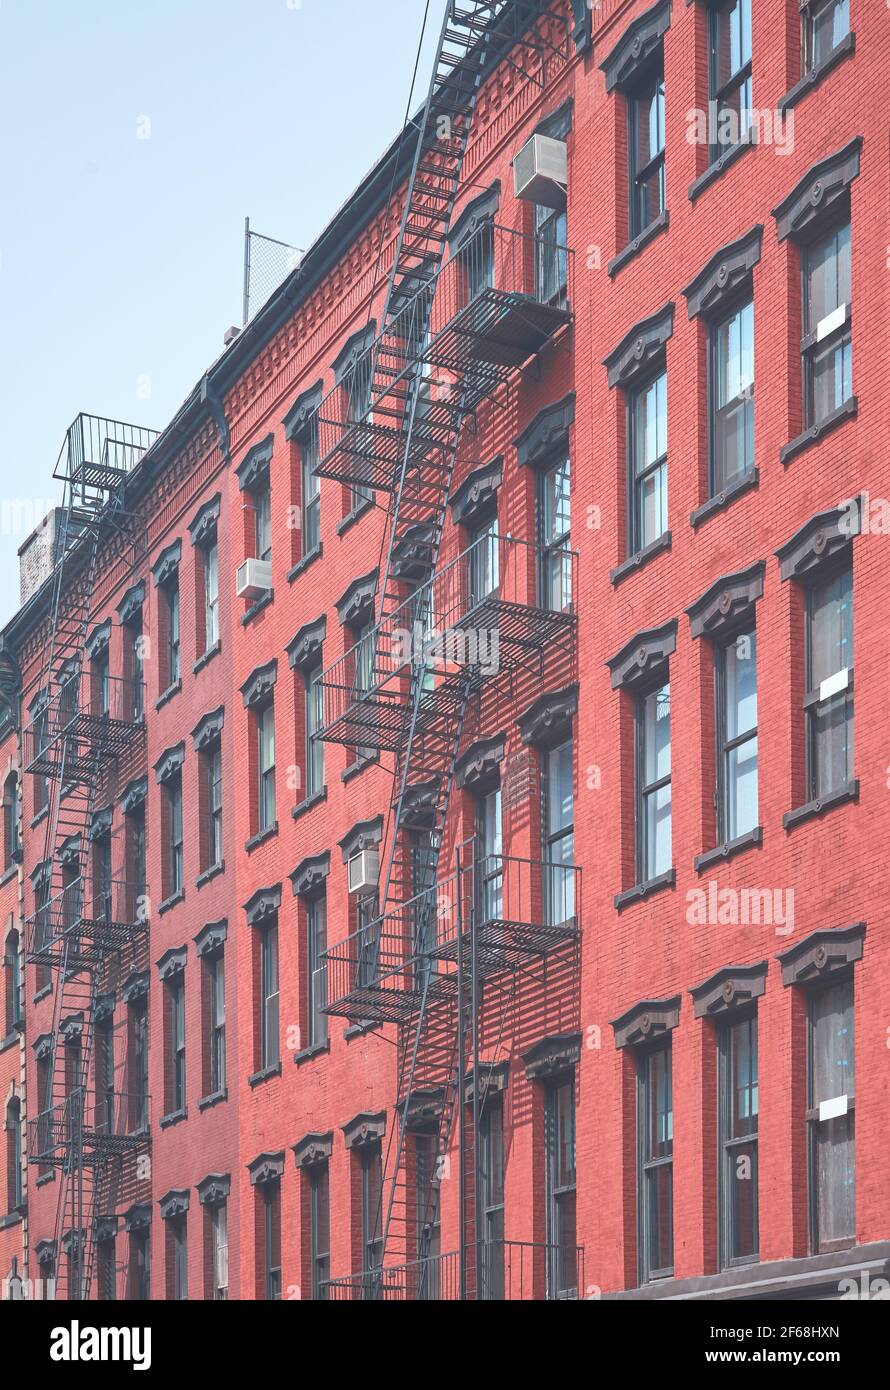 Vieux bâtiment en brique avec échappement de feu de fer, couleurs appliquées, New York City, Etats-Unis. Banque D'Images